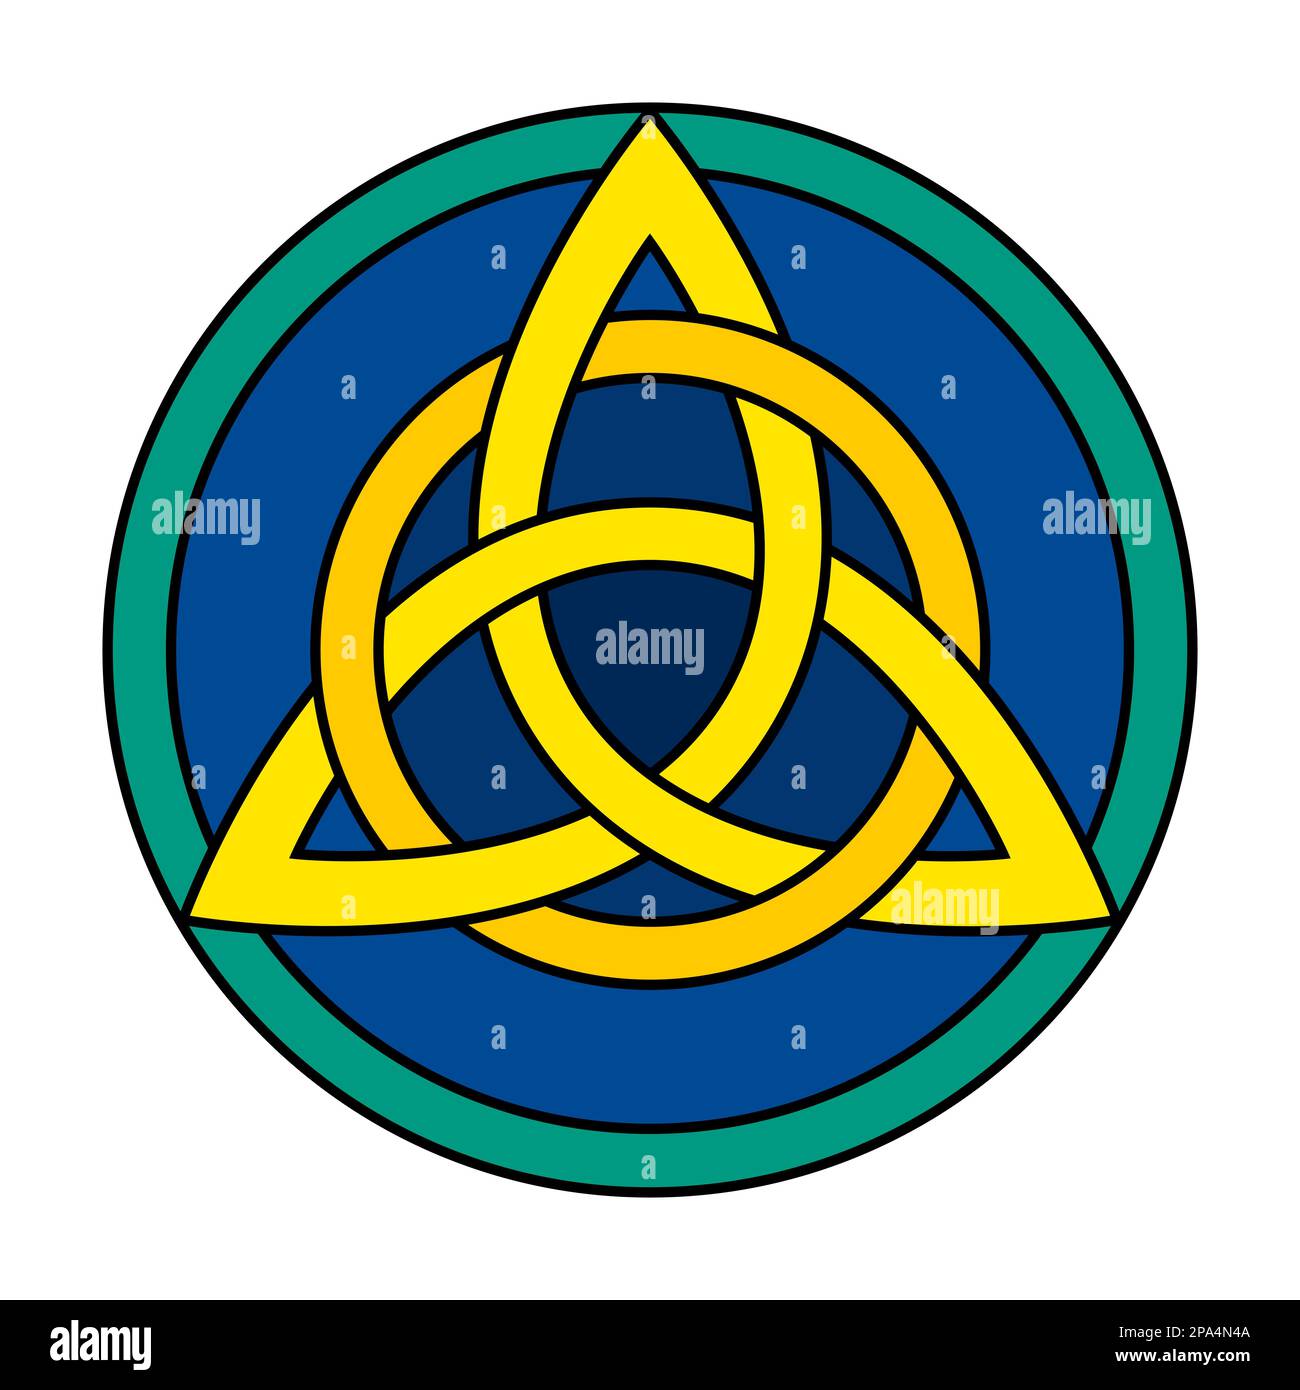 Nœud de trèfle celtique avec cercle dans un cadre circulaire. Triquetra jaune, entrelacée avec un cercle orange, sur fond bleu foncé. Banque D'Images